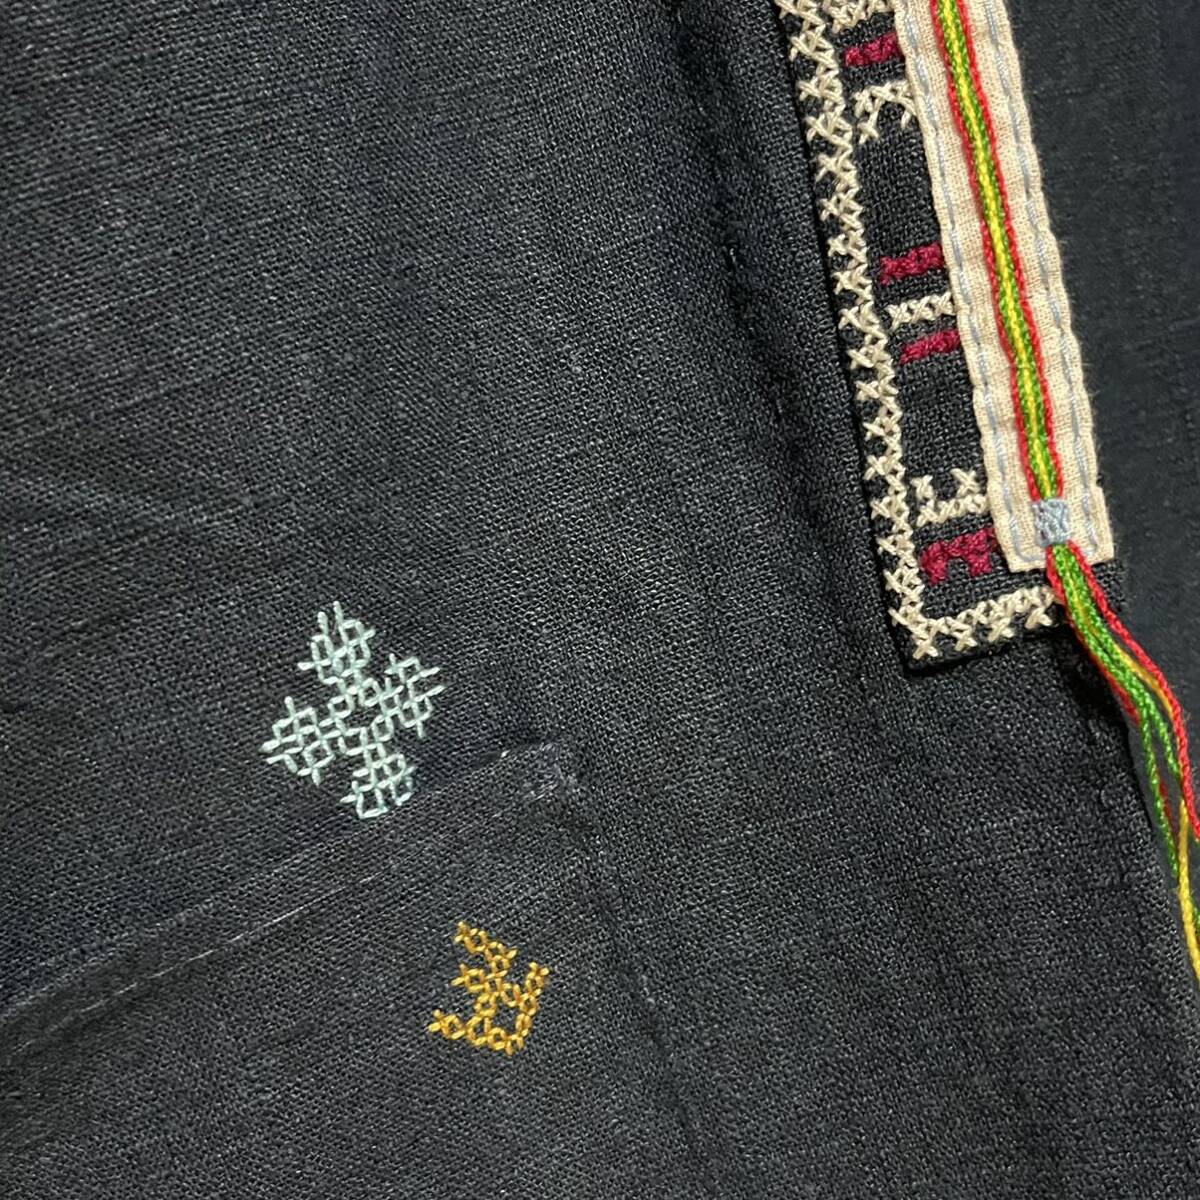 タイ ヤオ族 刺繍 ヘンプ ジャケット 民族衣装 麻 モン族 ナガ族 アカ族 3_画像4